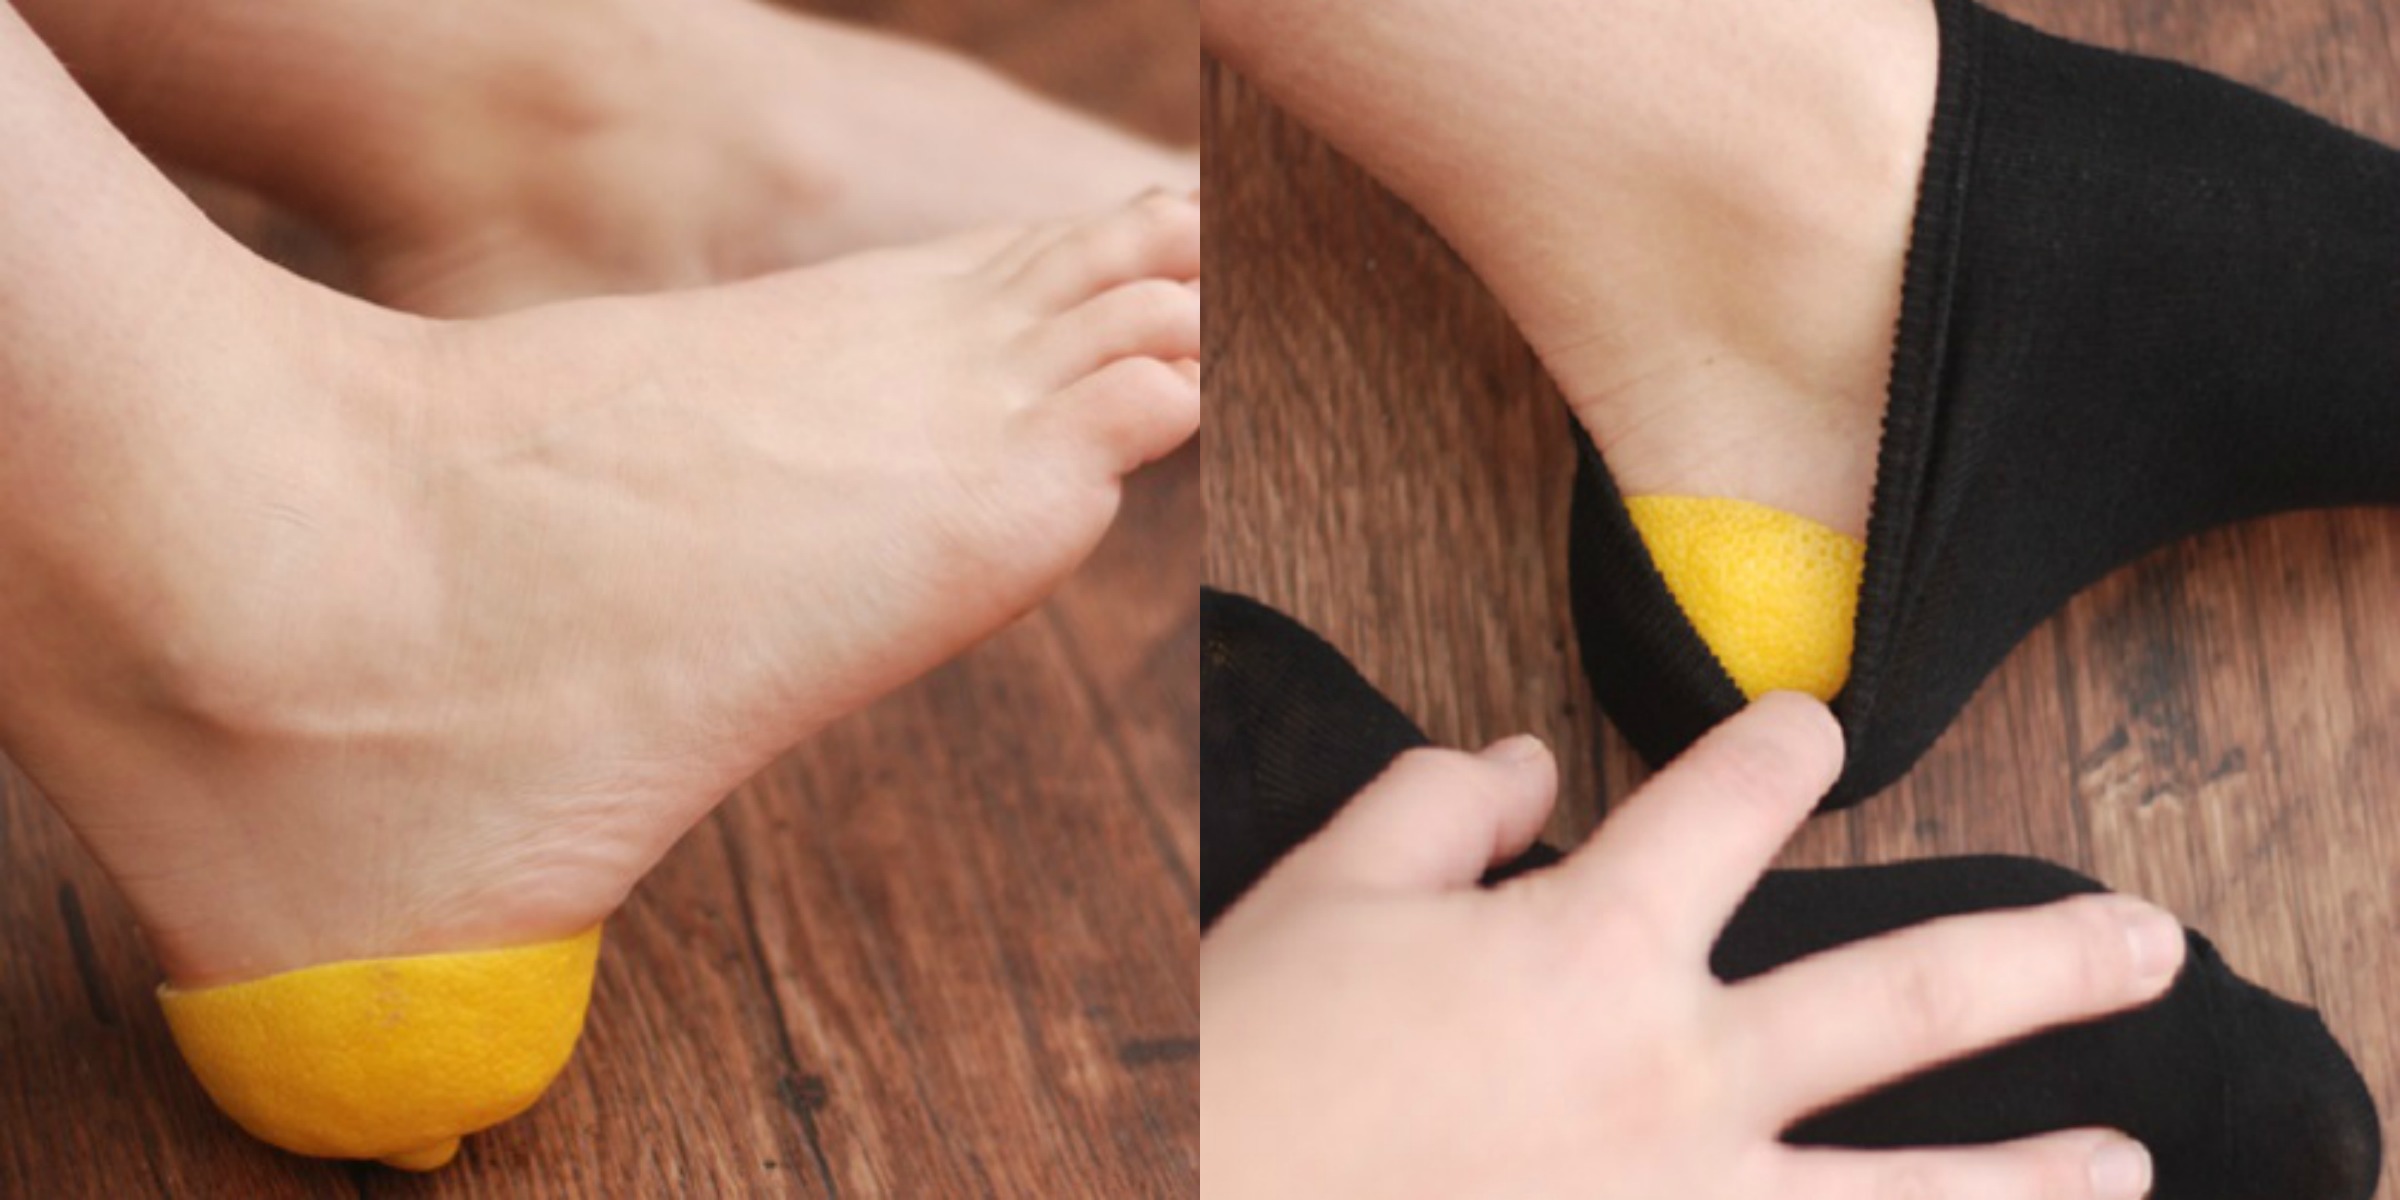 Aprender este truco, ¡nunca más te irás a la cama sin una cáscara de limón en los pies!